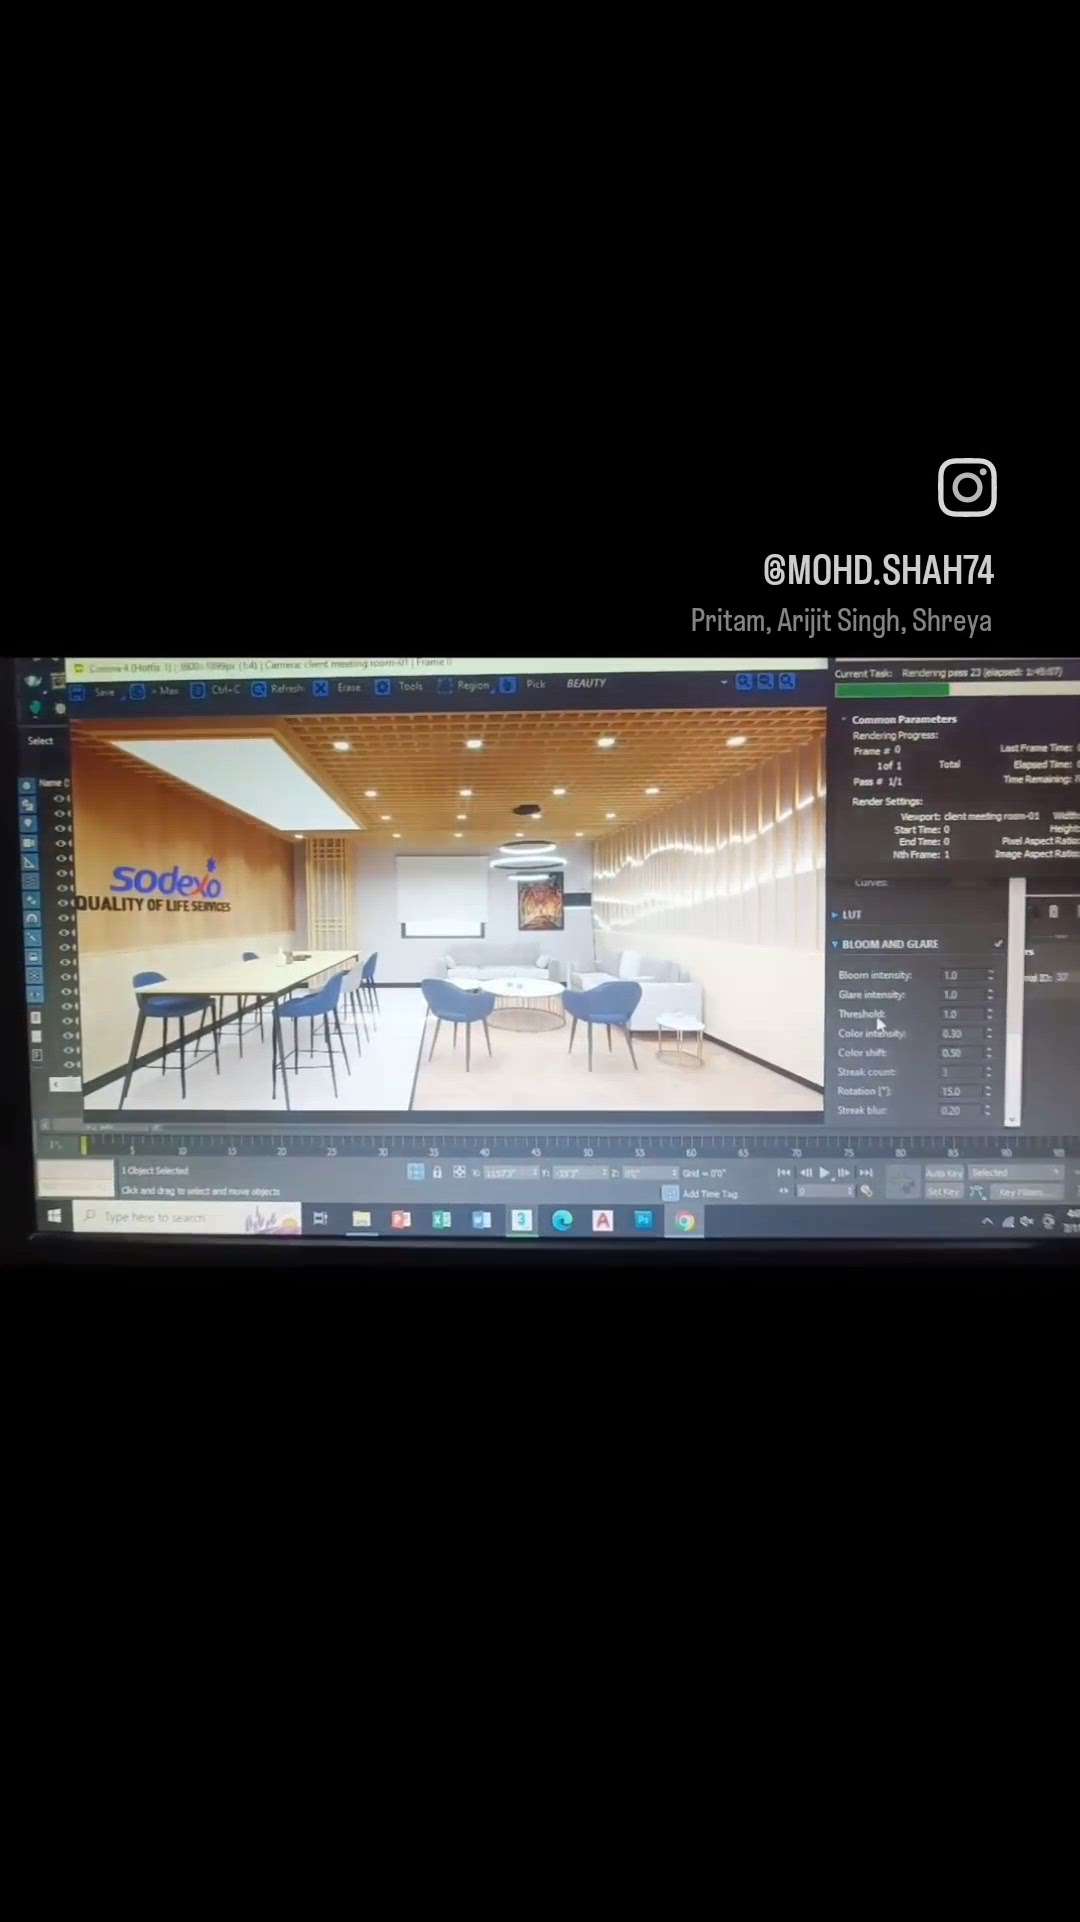 3D Render // Office Meeting Room Design
#3dvisualizer #3dplanning #3dmaxcorona #3dmodel #3dmaxvray #office #sayyedinteriordesigns #sayyedinteriordesigner #sayyedmohdshah #InteriorDesigner